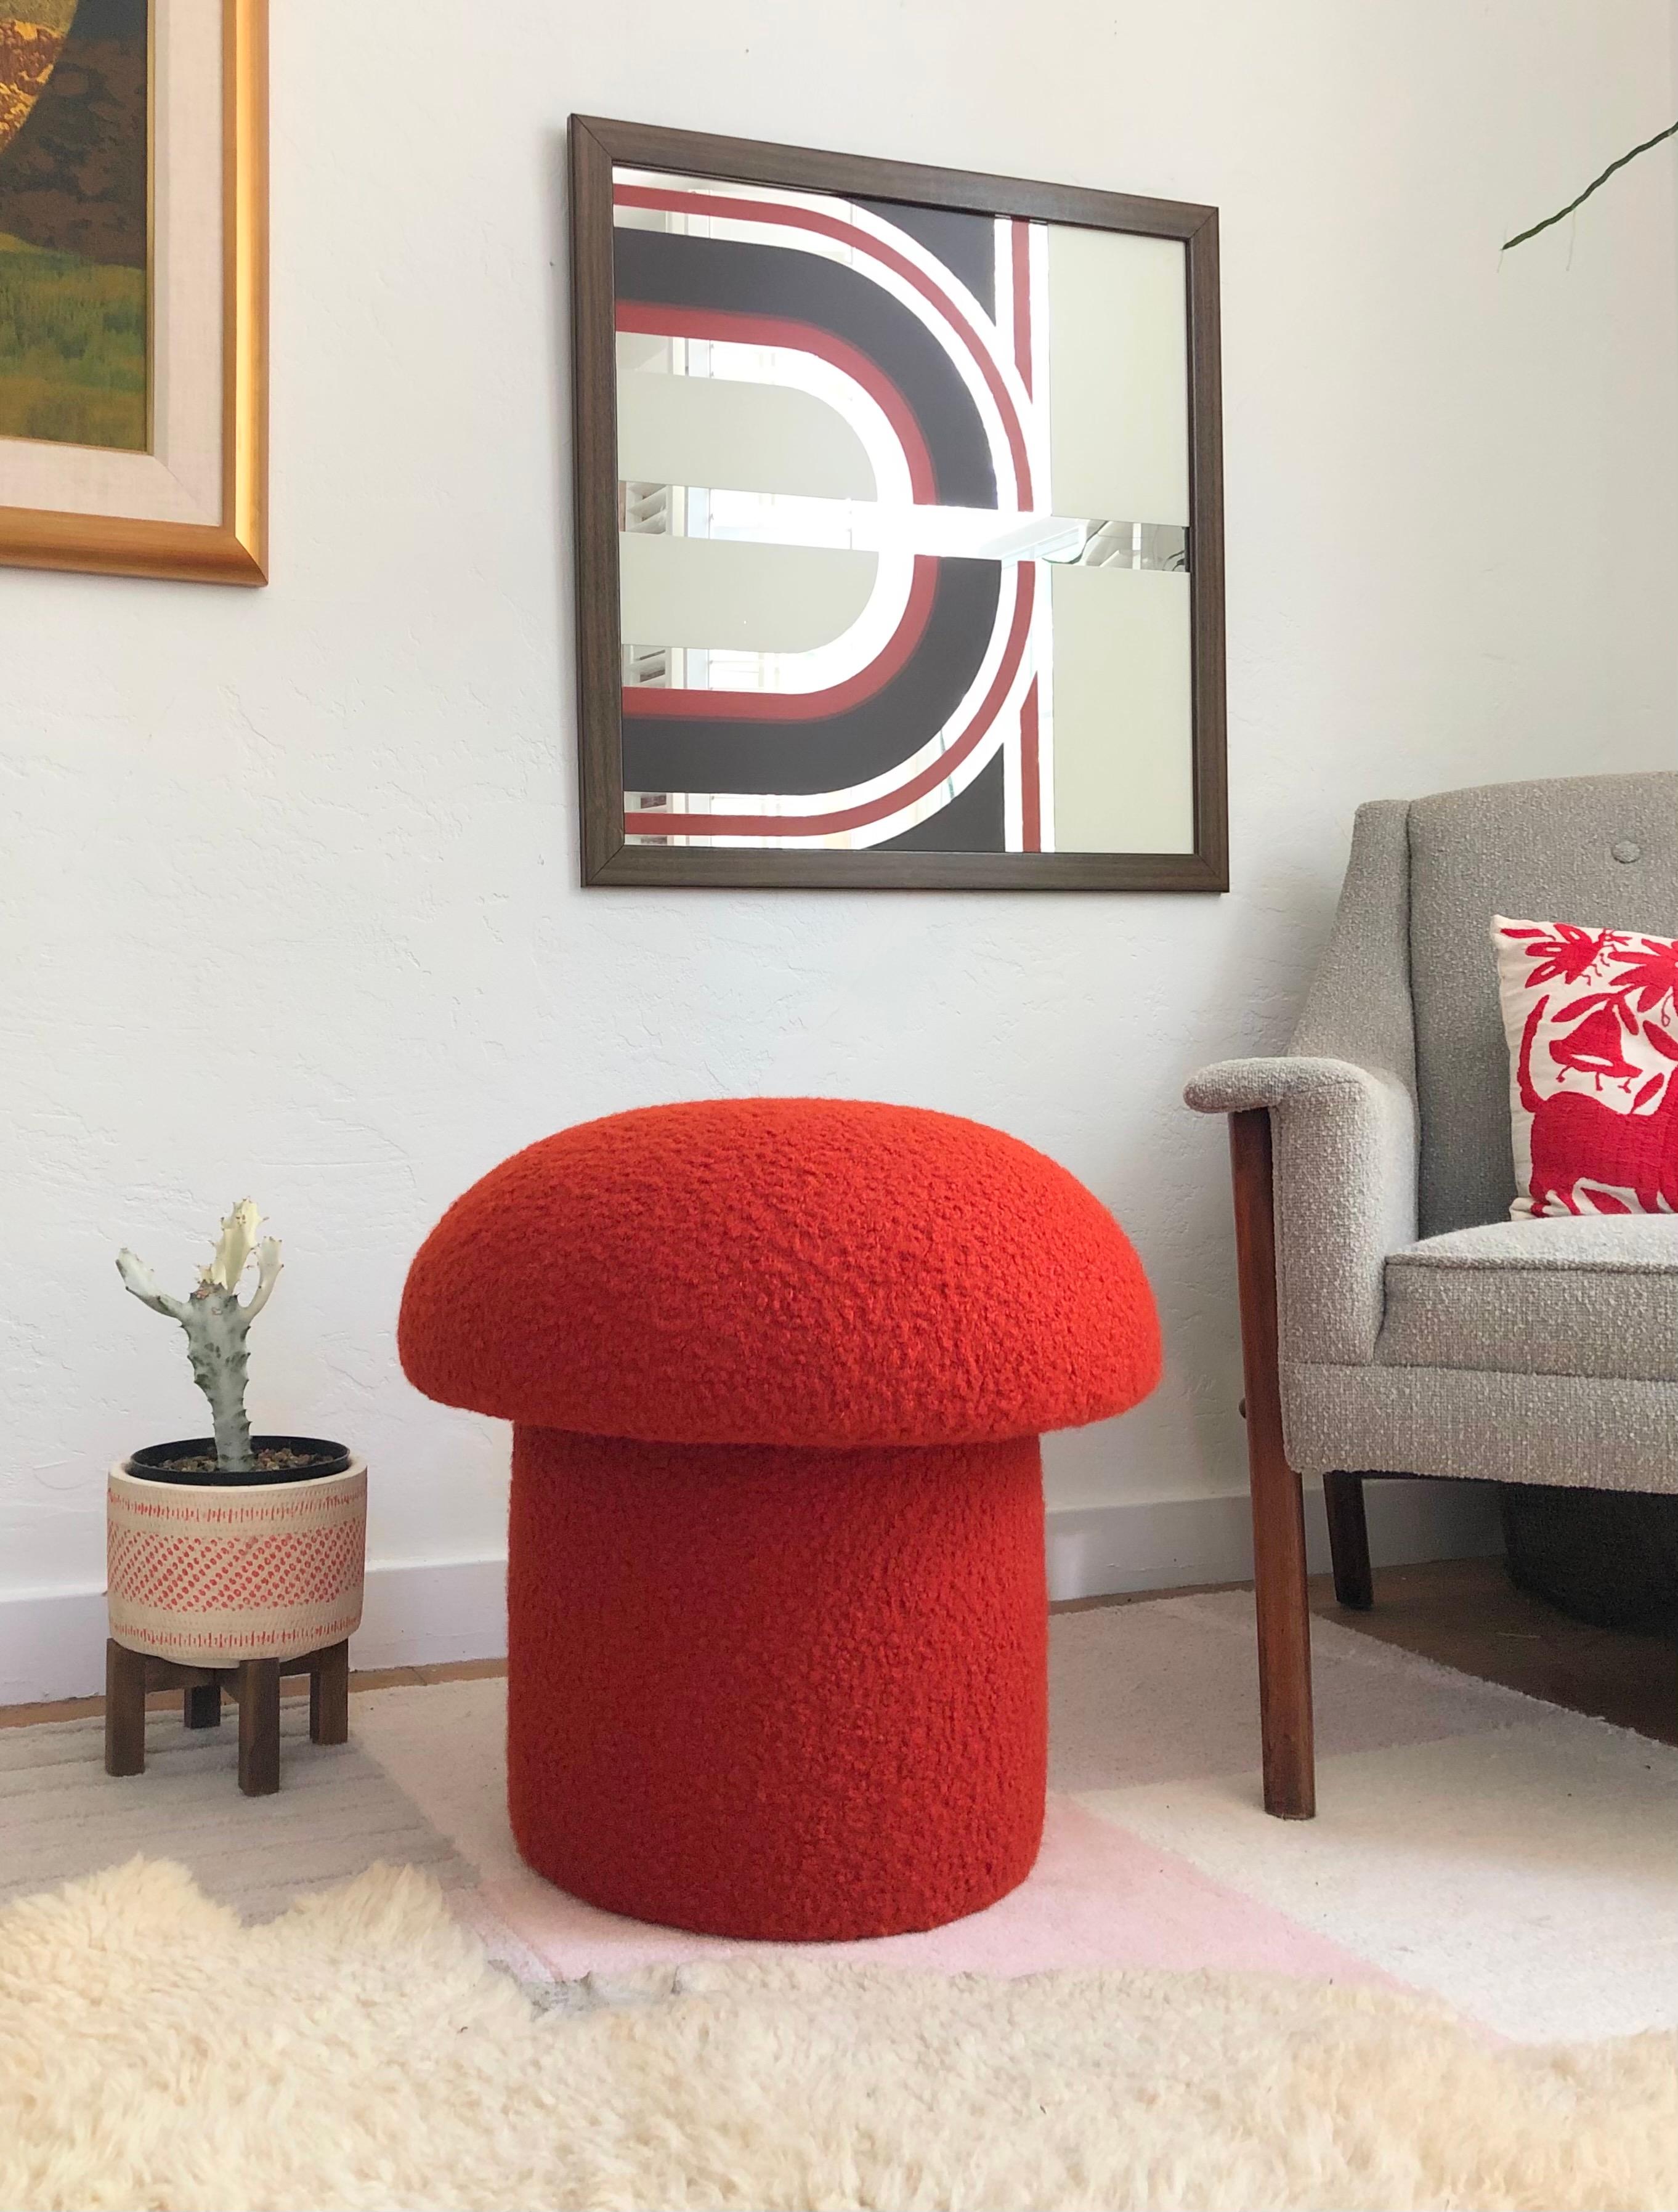 Un ottoman en forme de champignon, fait à la main, tapissé d'un tissu bouclé de couleur rouge-orange. Parfait pour être utilisé comme pouf ou comme siège supplémentaire d'appoint. Un siège coussiné confortable et une pièce d'accentuation